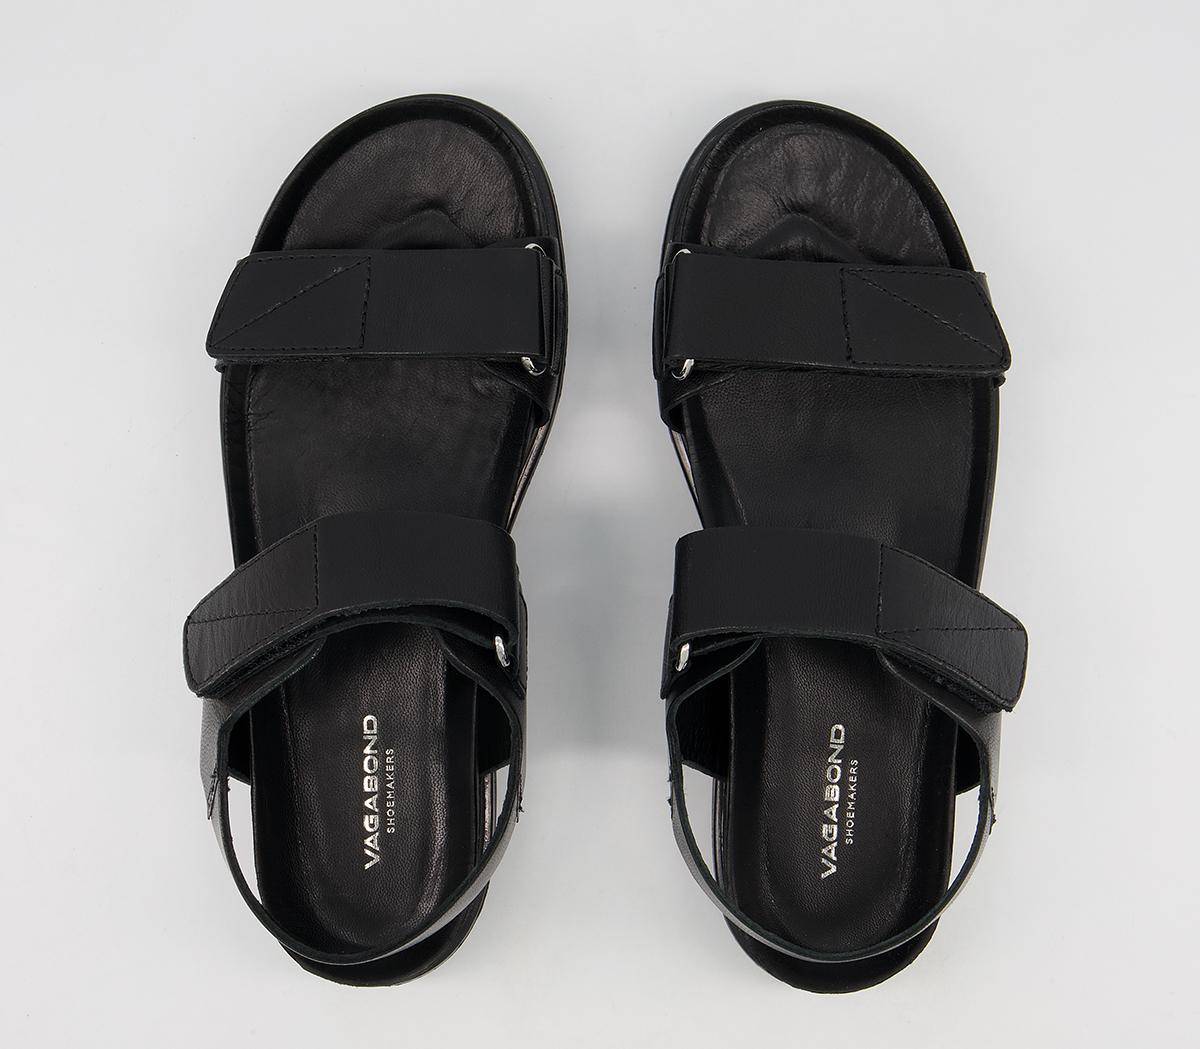 Vagabond Shoemakers Erin Two Strap Sandals Black - Women’s Sandals